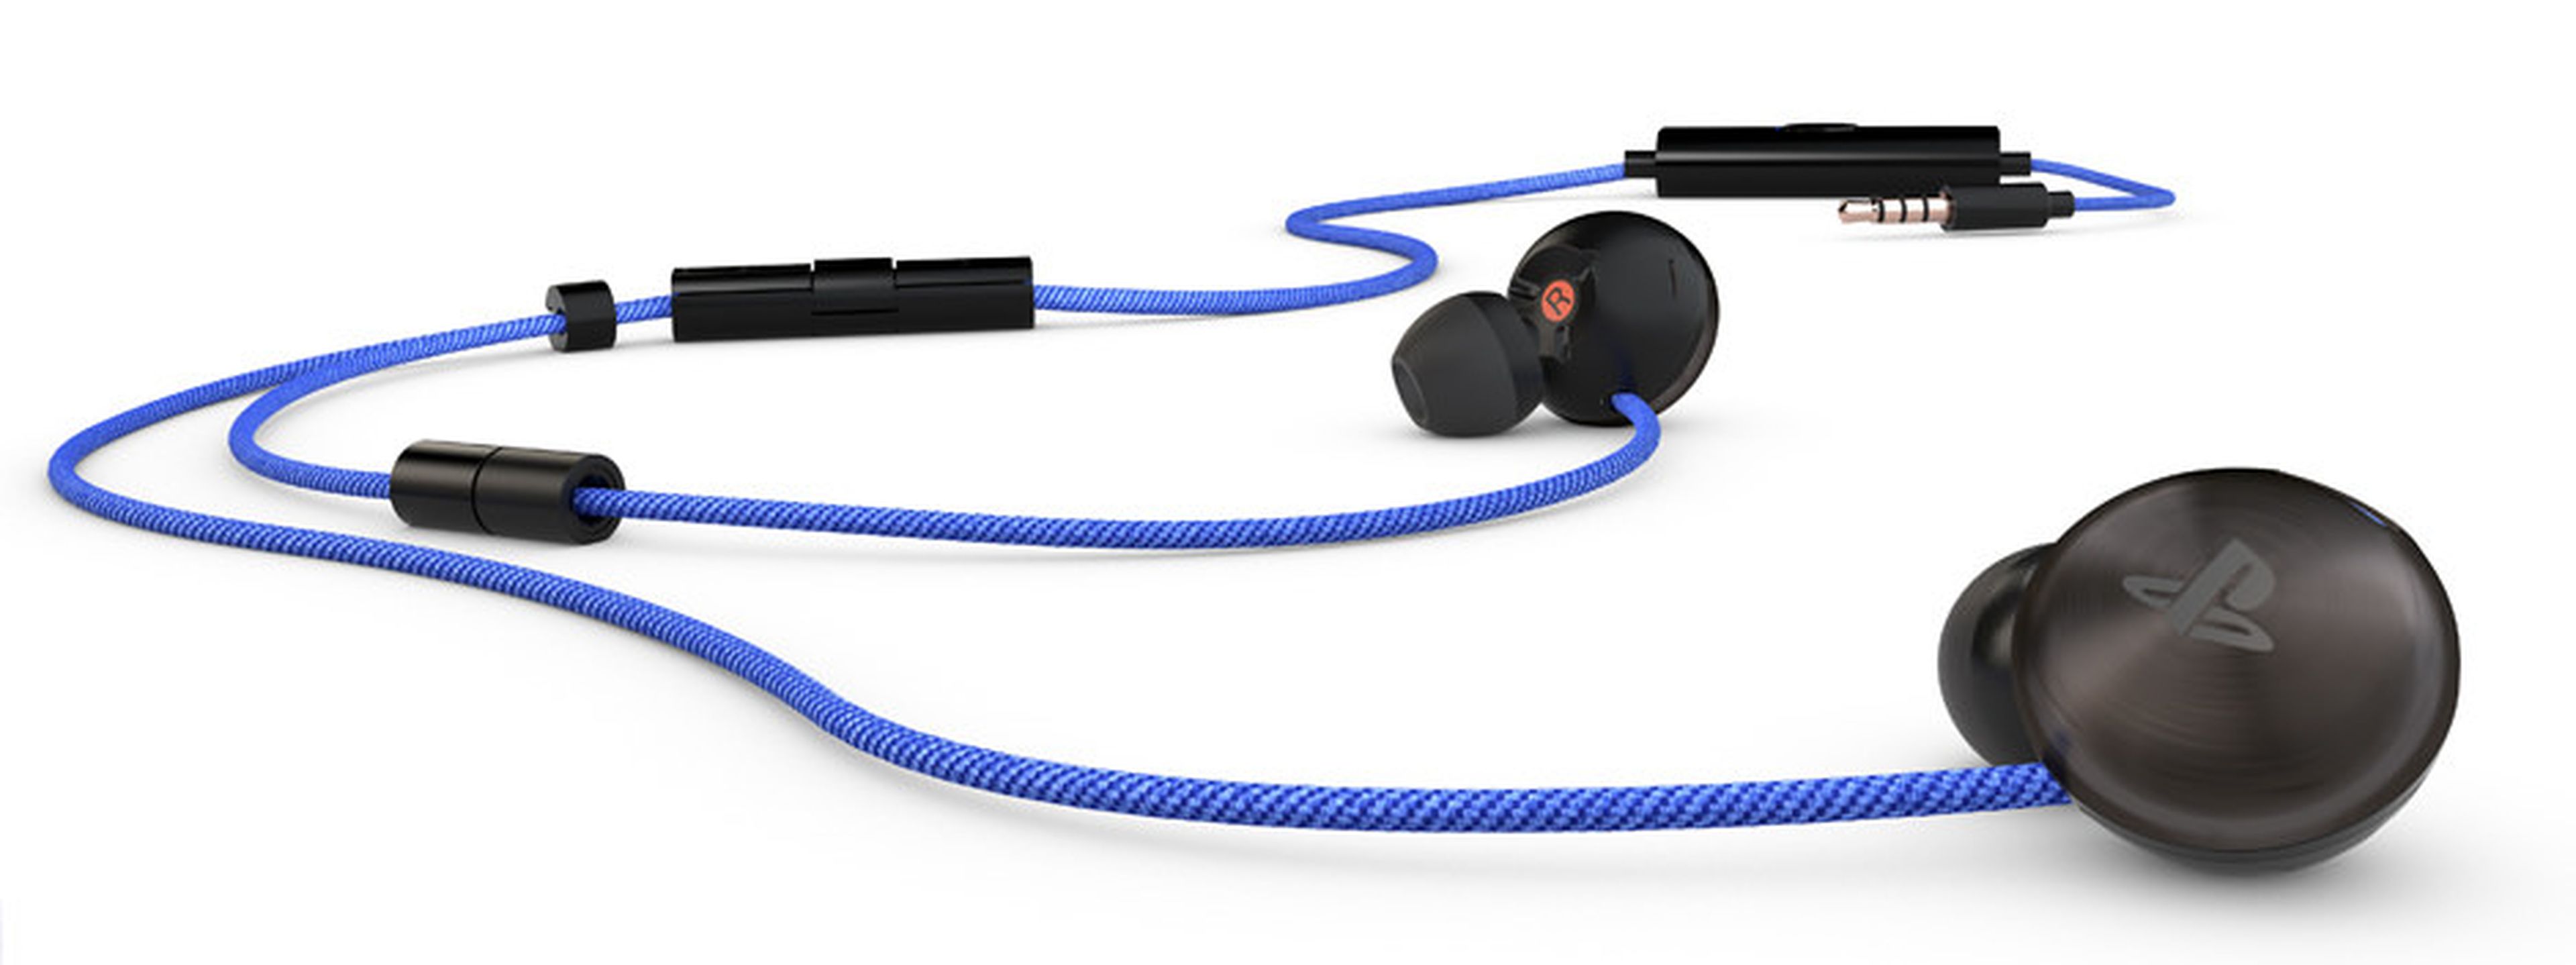 PS4: Nuevos auriculares estéreo con micrófono